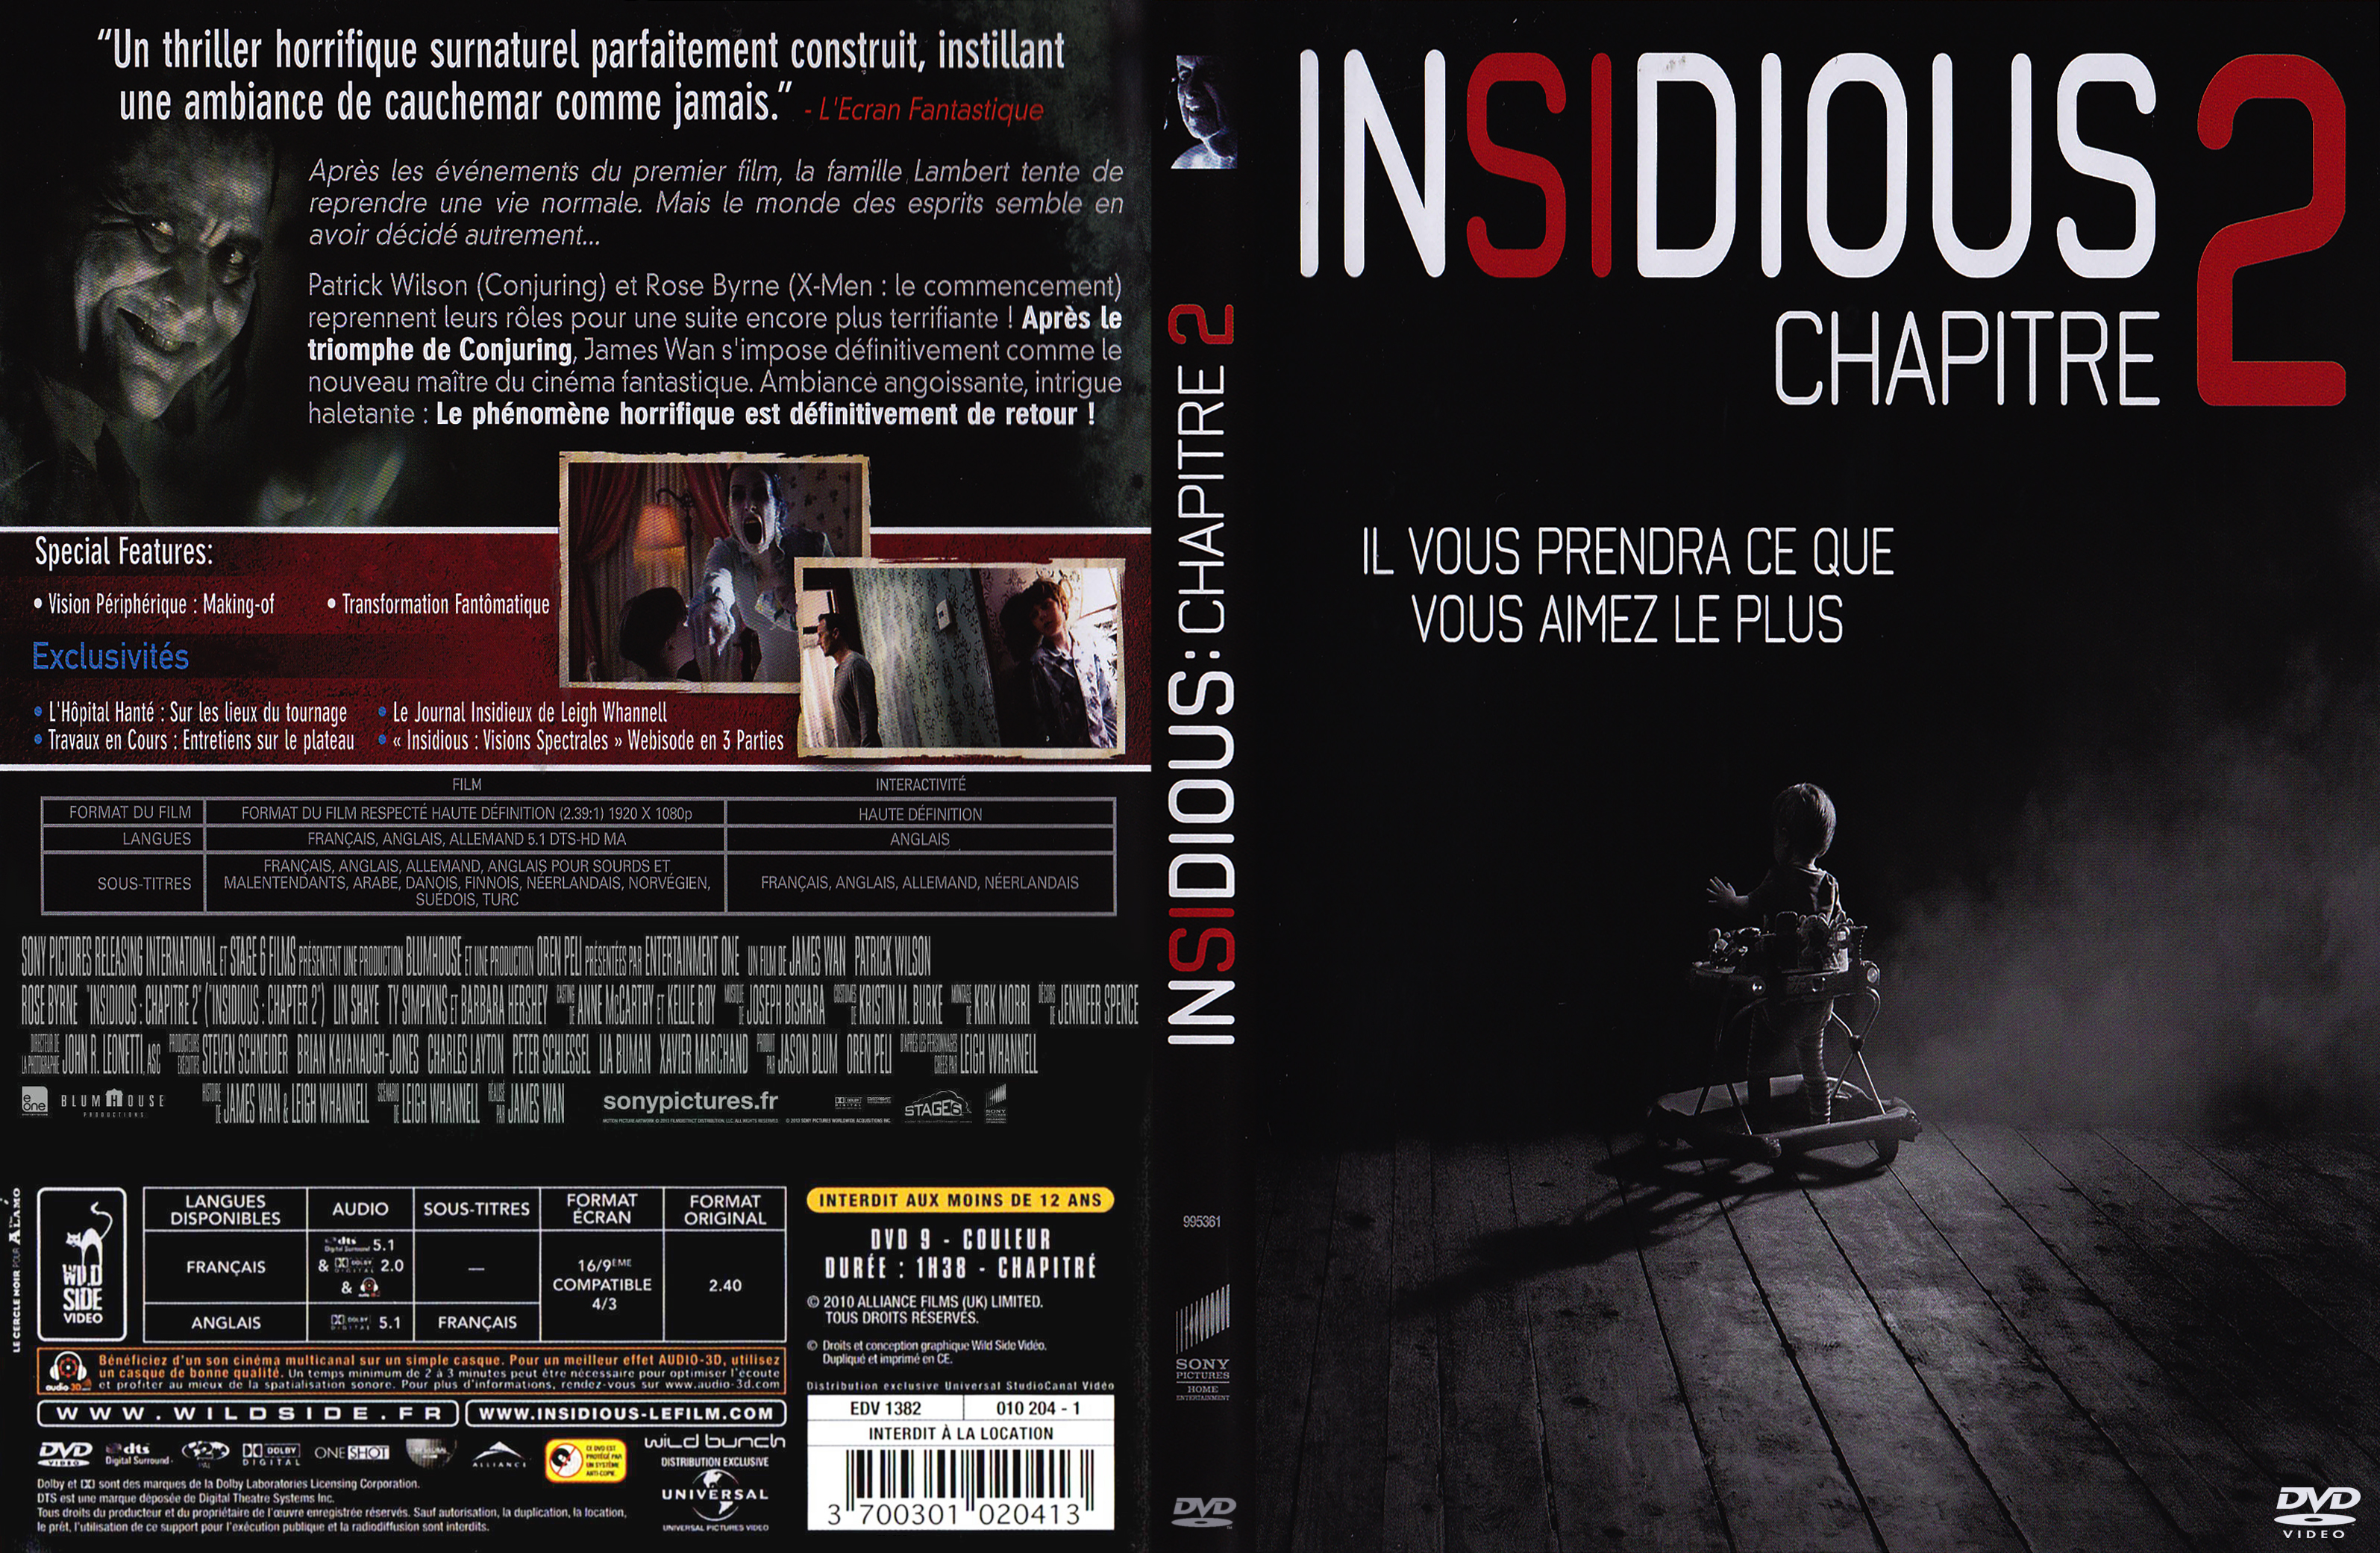 Jaquette DVD Insidious 2 custom v2